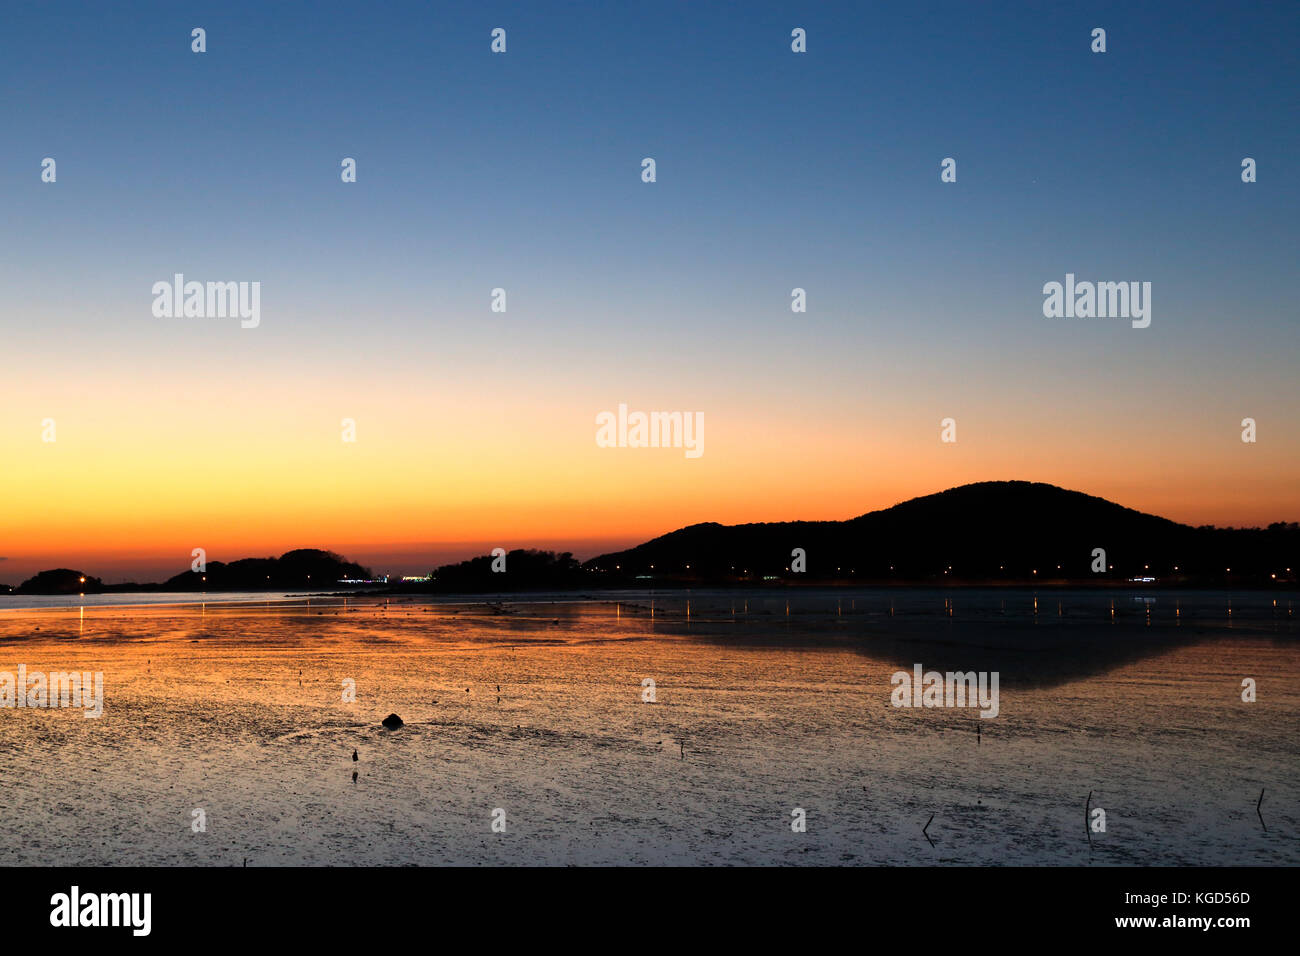 Nach einem Sonnenuntergang über Schlamm Feld ergab bei Ebbe auf einer Insel in Südkorea Stockfoto